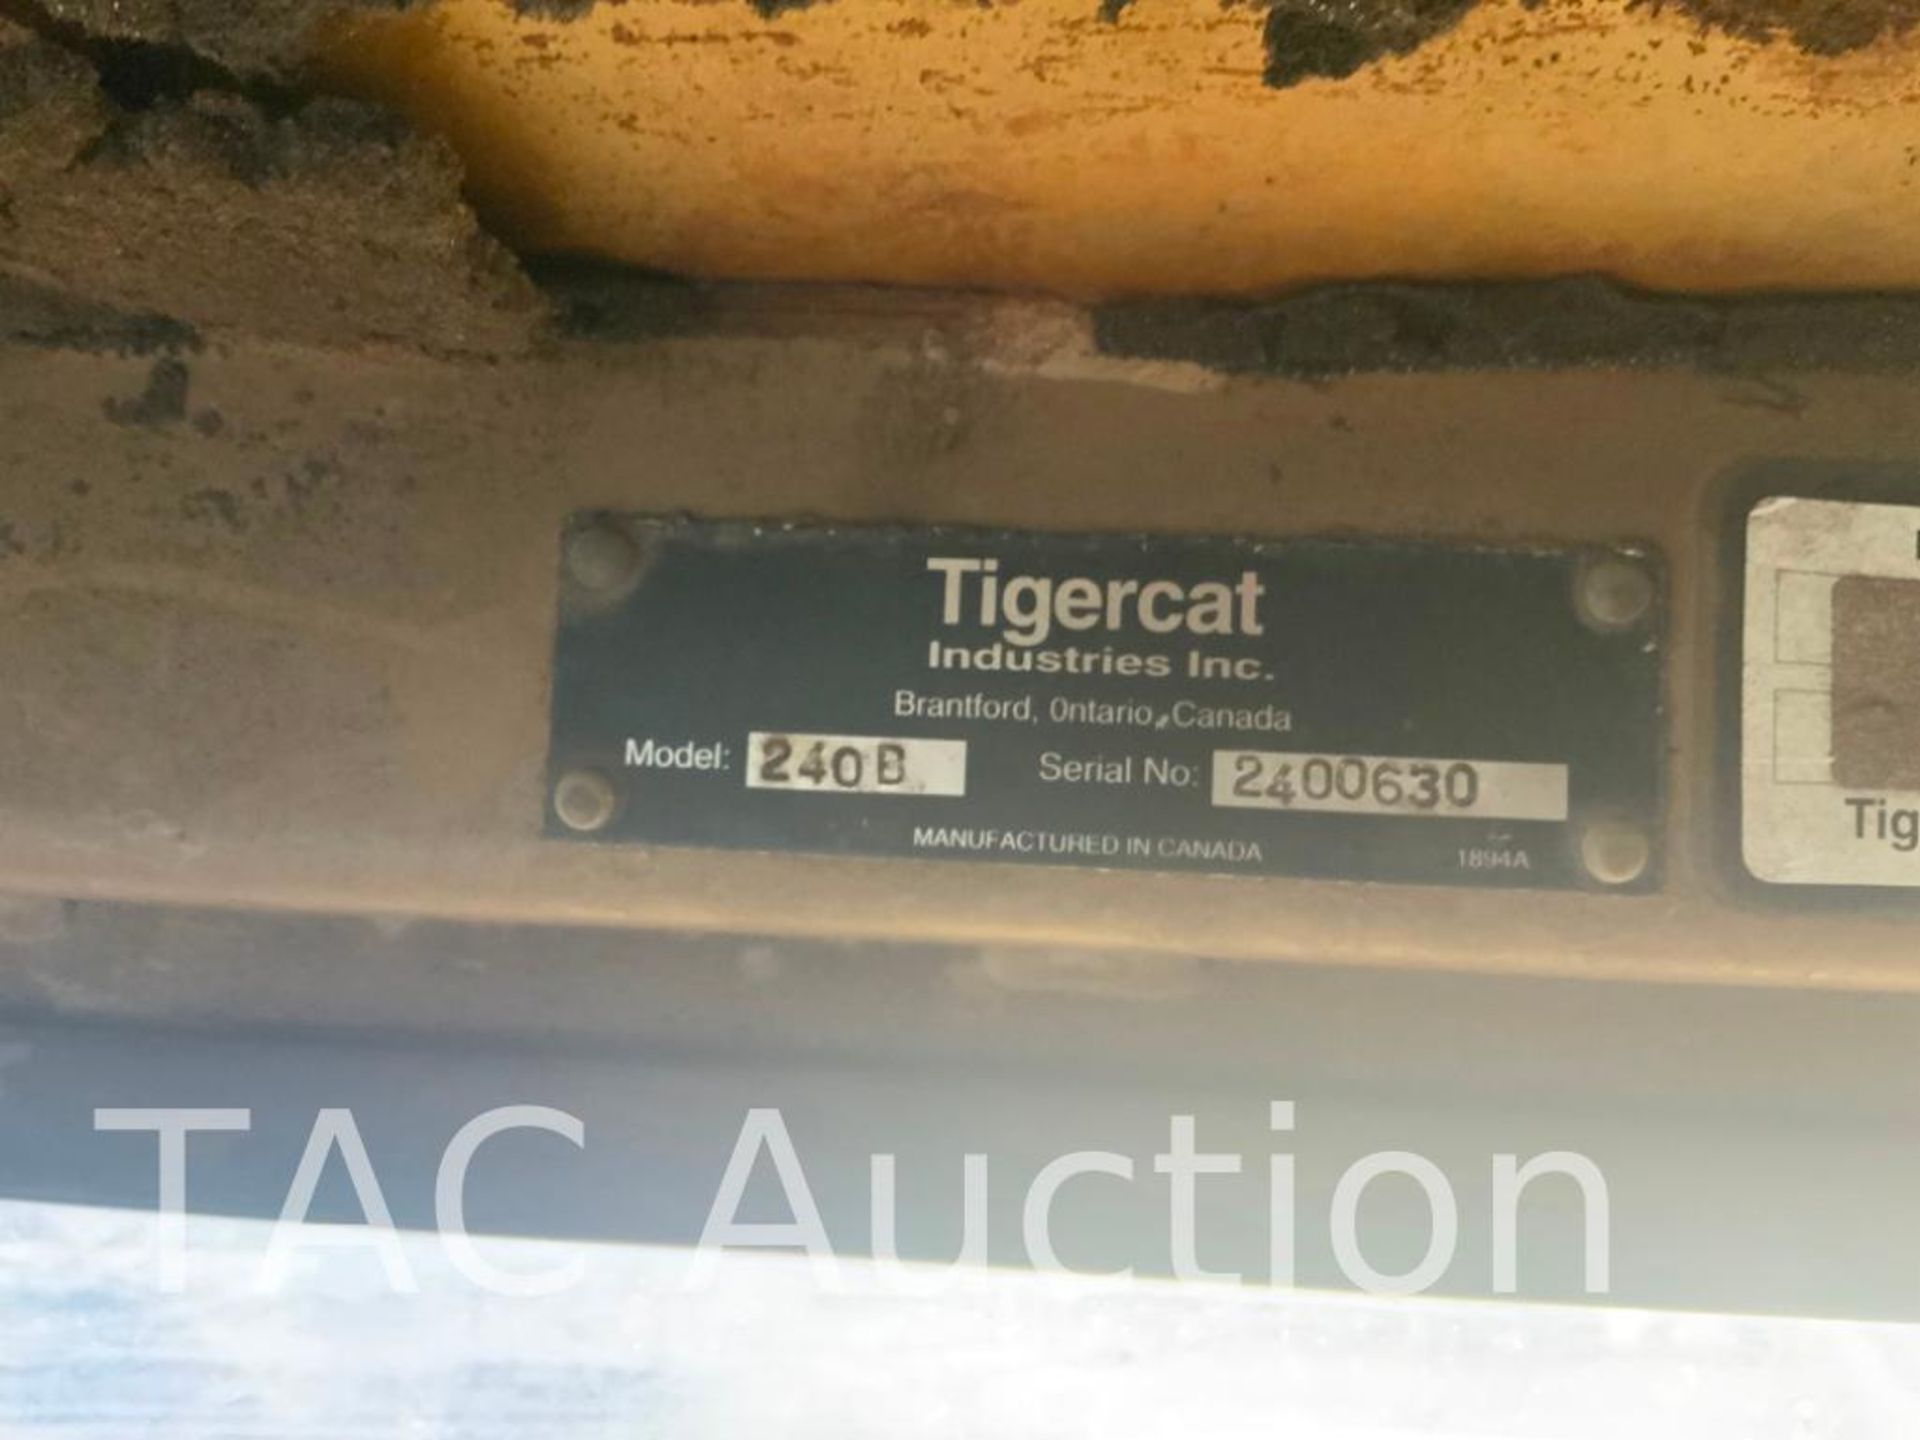 Tigercat 240B Knuckleboom Log Loader - Image 44 of 44